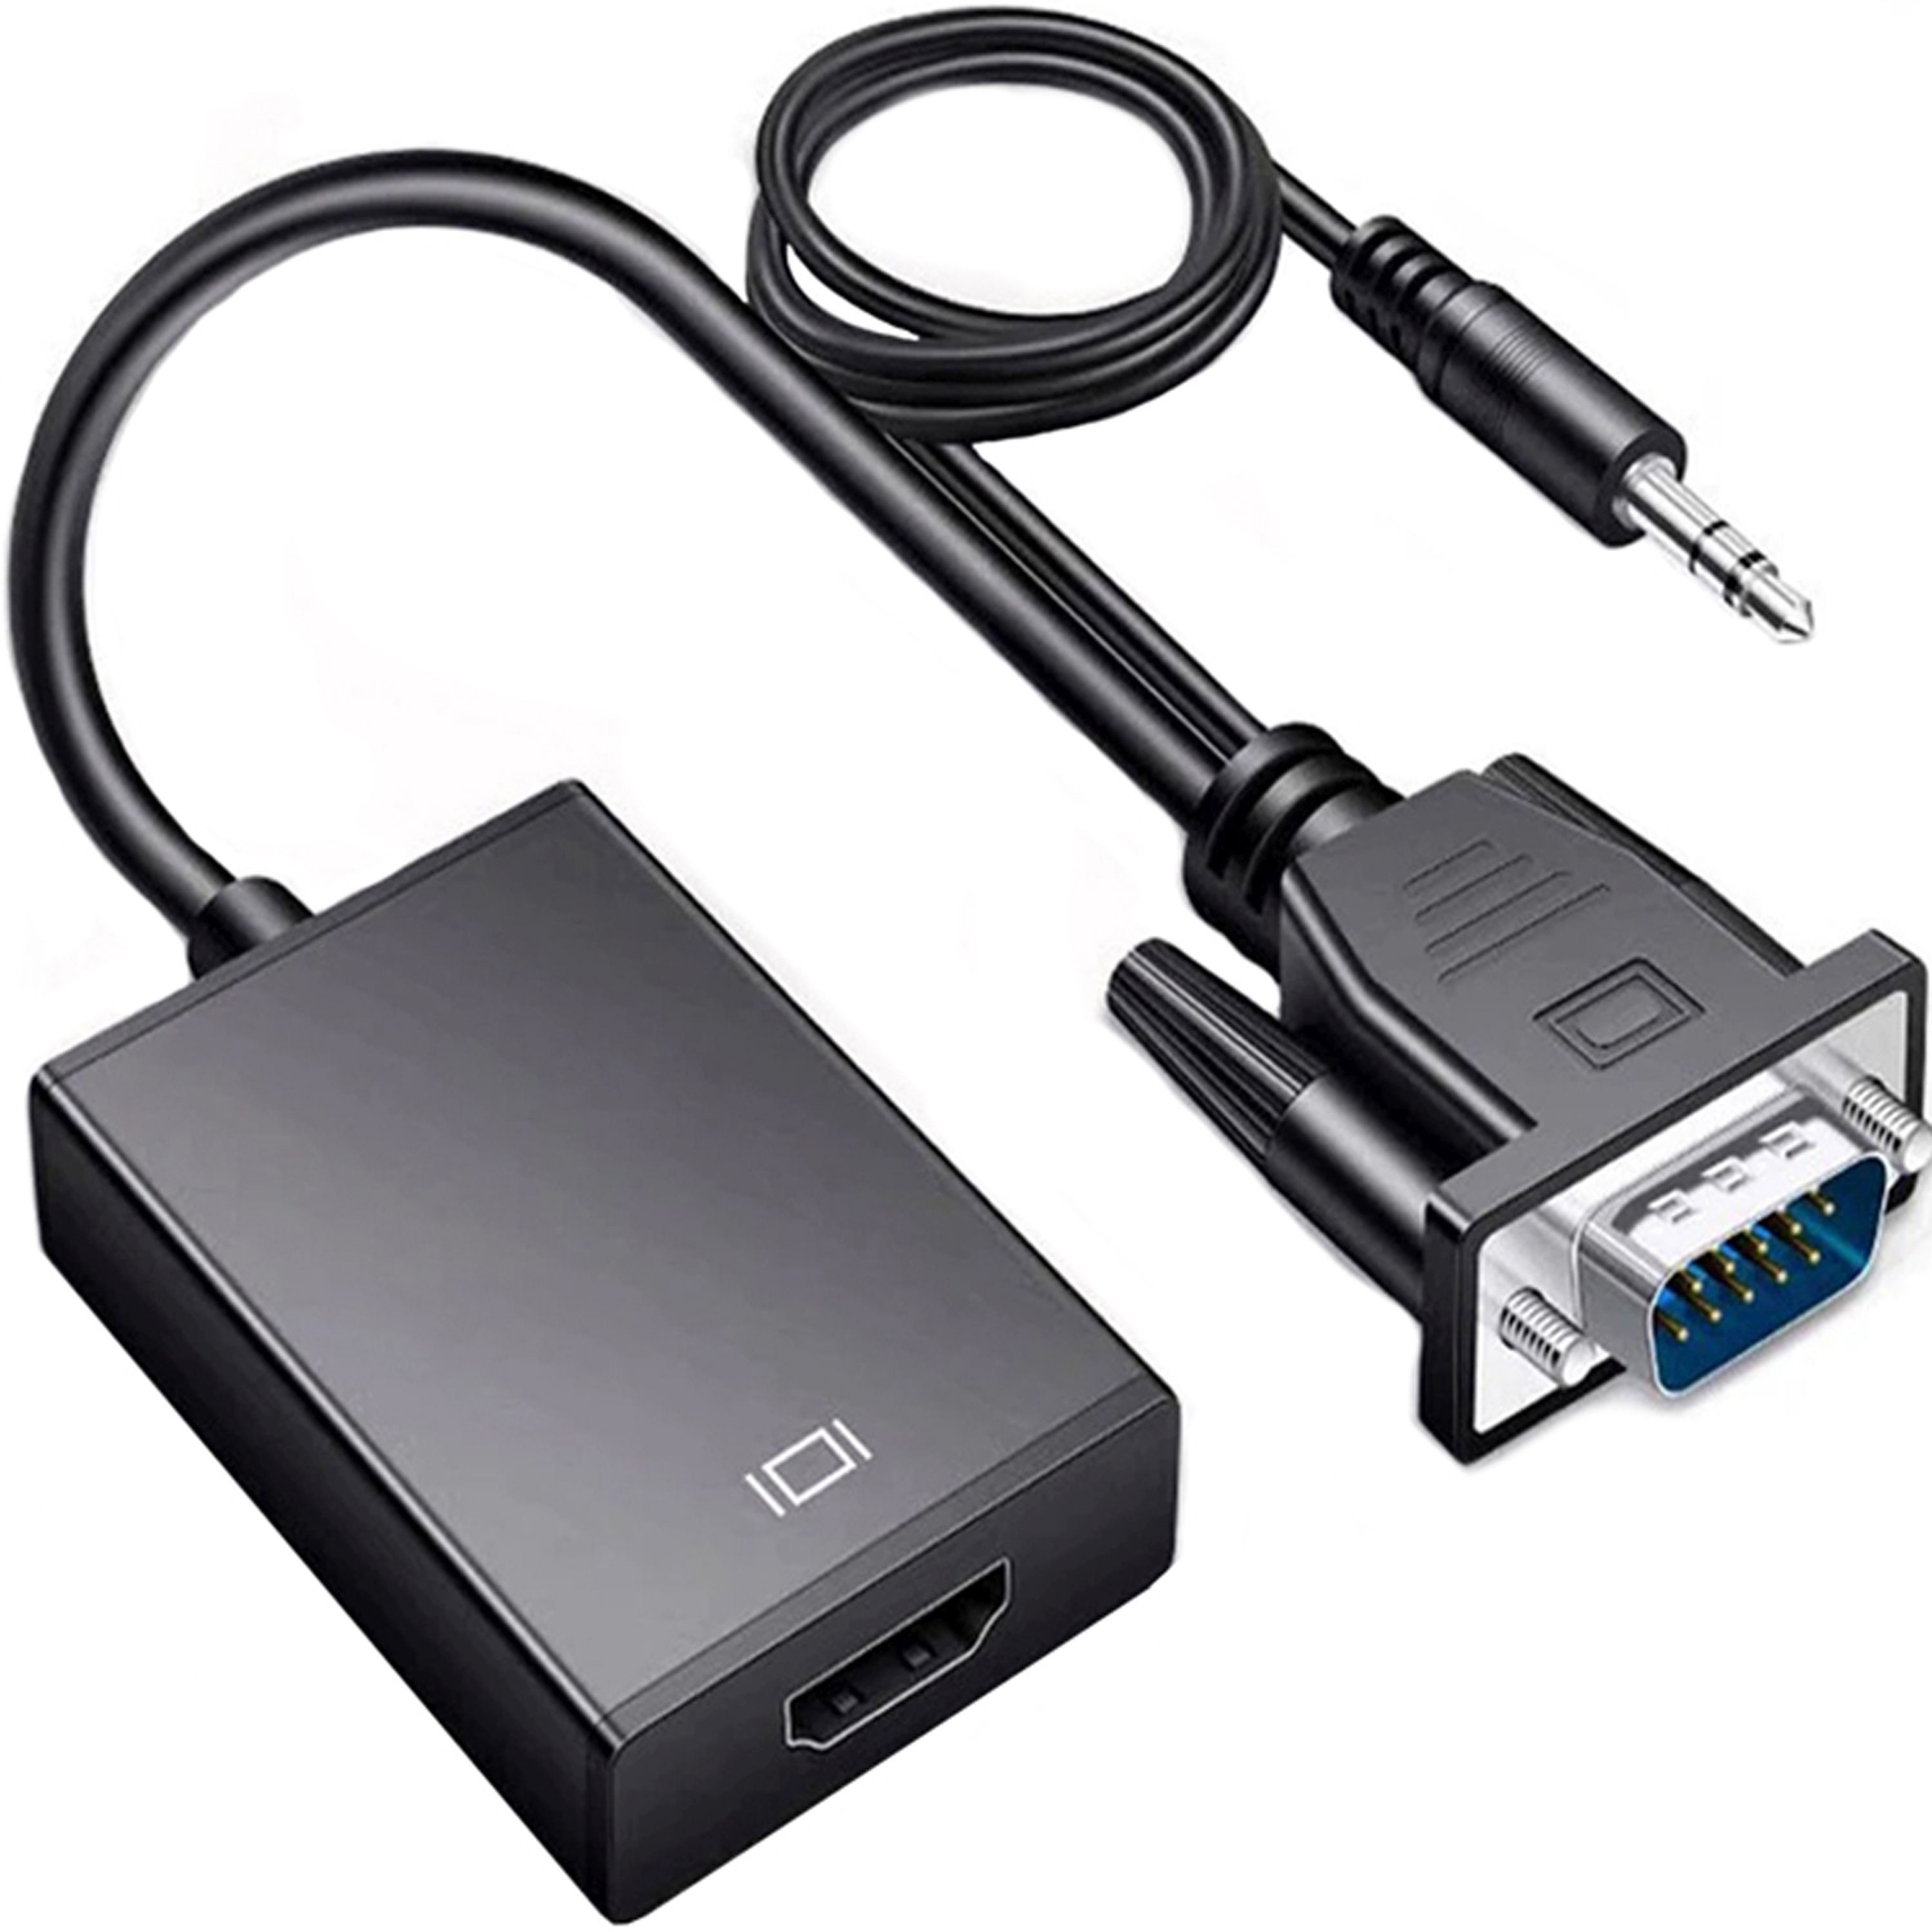 Retoo 1080P VGA auf HDMI Audio-Untersützung Адаптери Auflösung VGA zu HDMI PC Audio- & Video-Adapter 3,5-mm-Klinke, VGA, HDMI zu 3,5-mm-Klinke, VGA, HDMI, Er überträgt auch Audio, Auflösung von 1080p, 60 Hz, Jack 3.5 mm